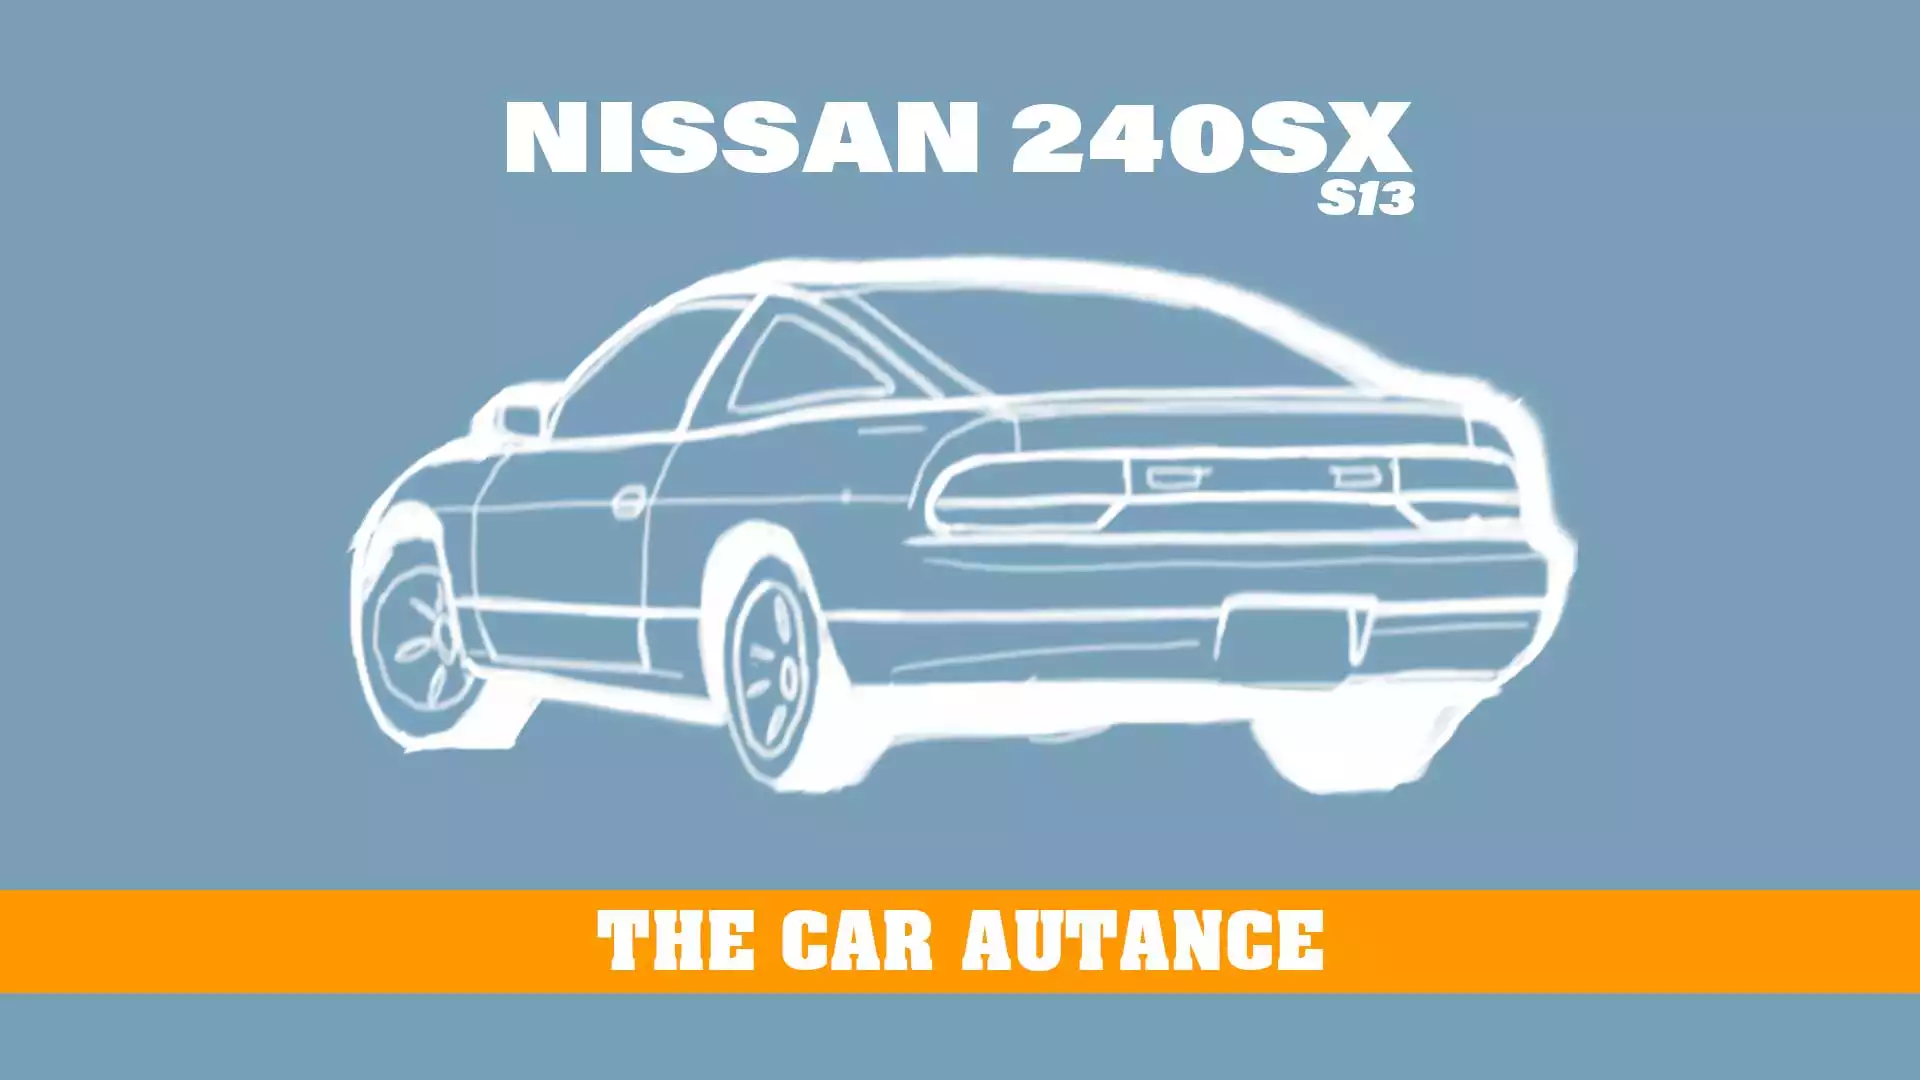 Nissan 240SX: The Car Autance (S13; 1989-1994)